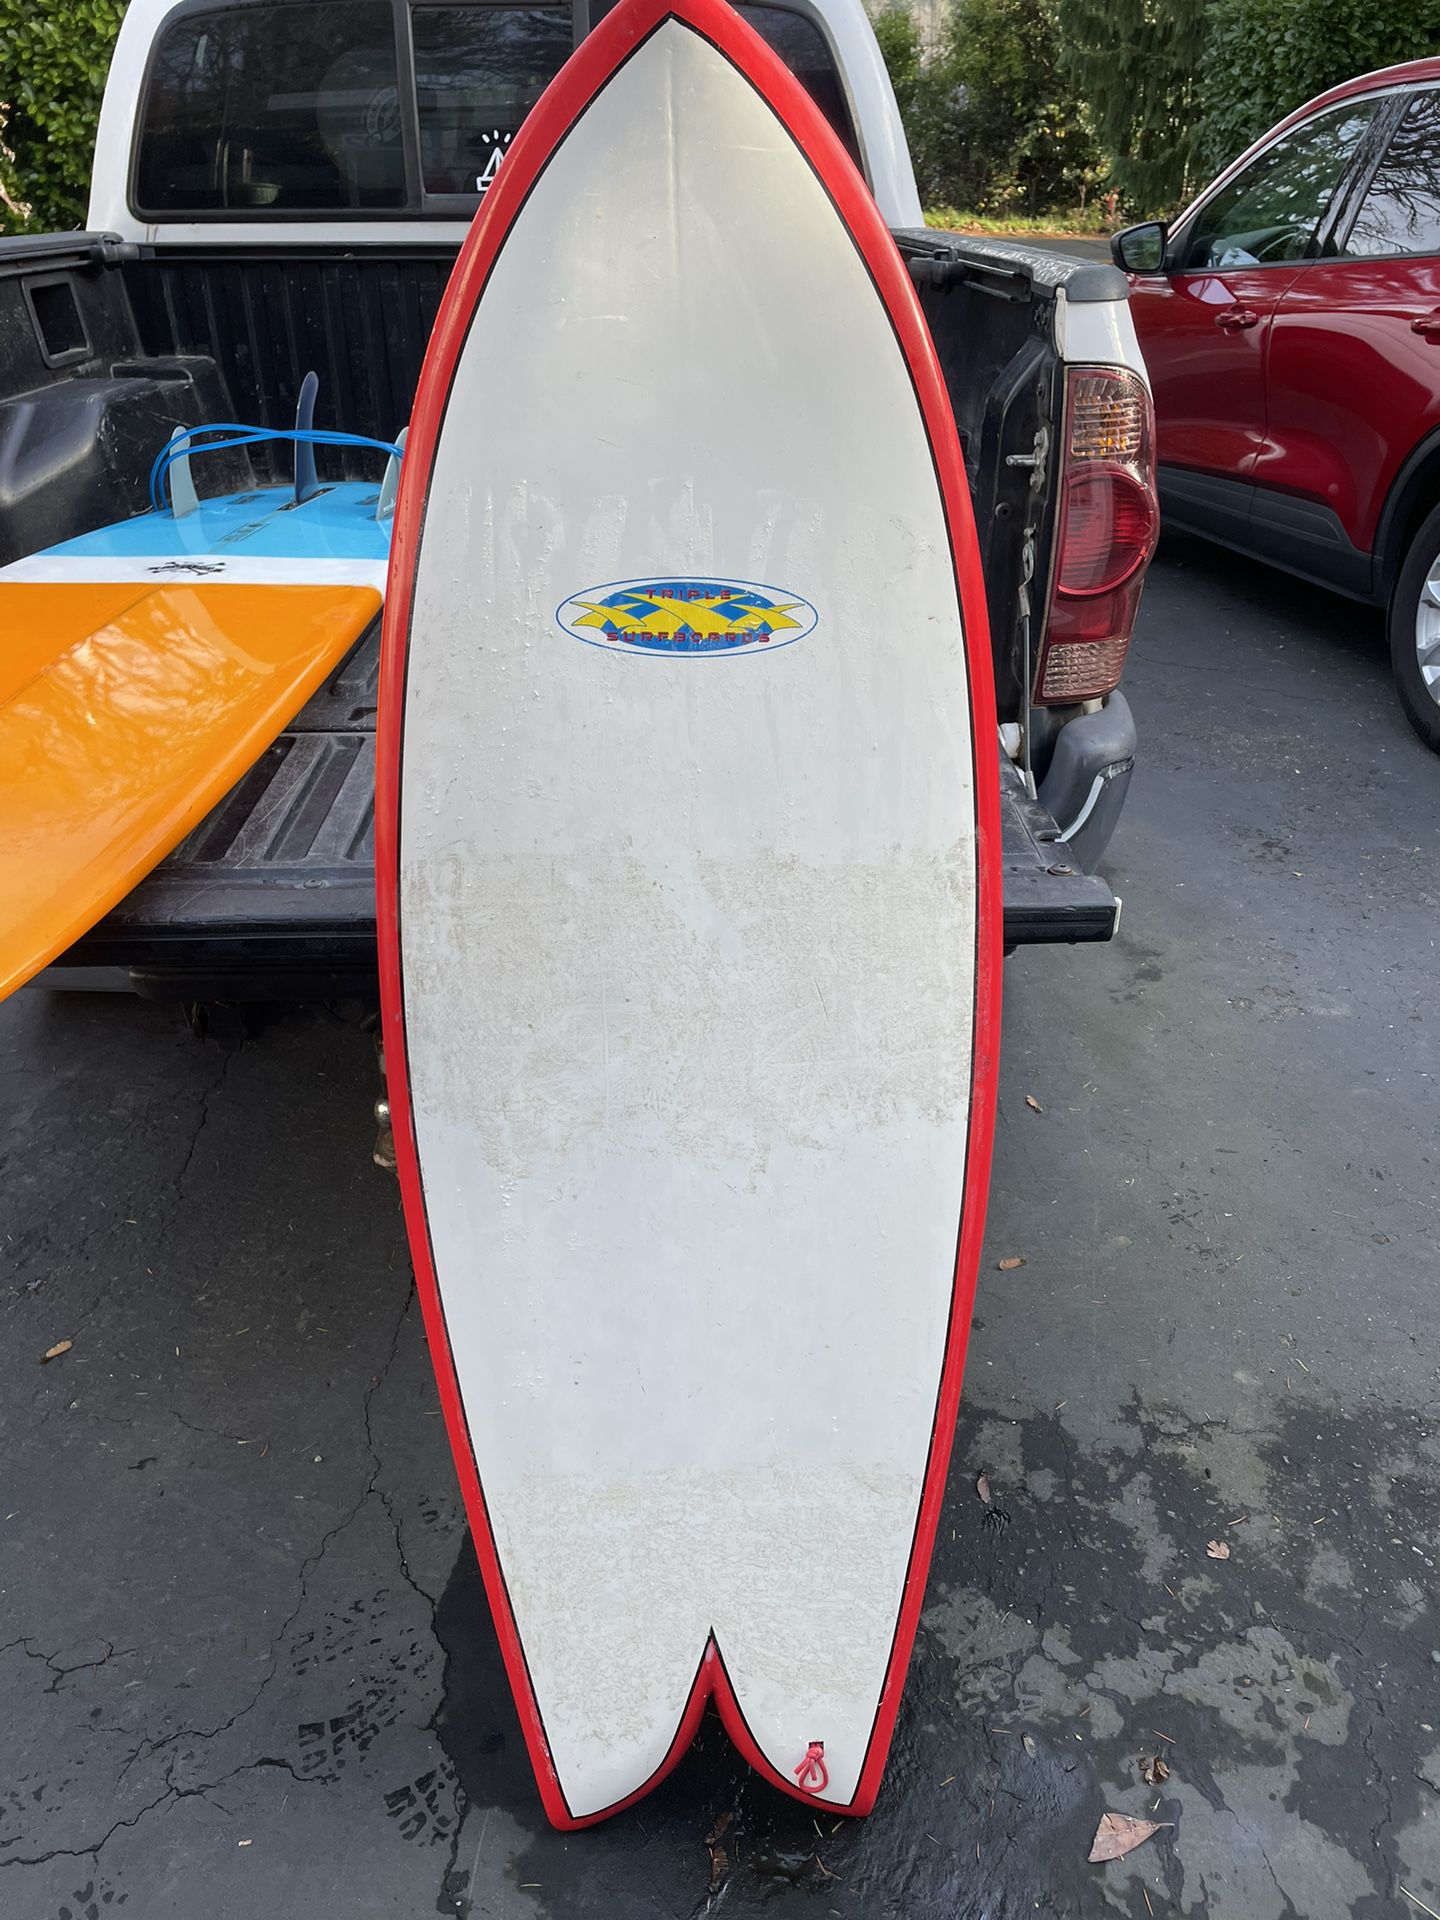 Triple X Surfboard $100